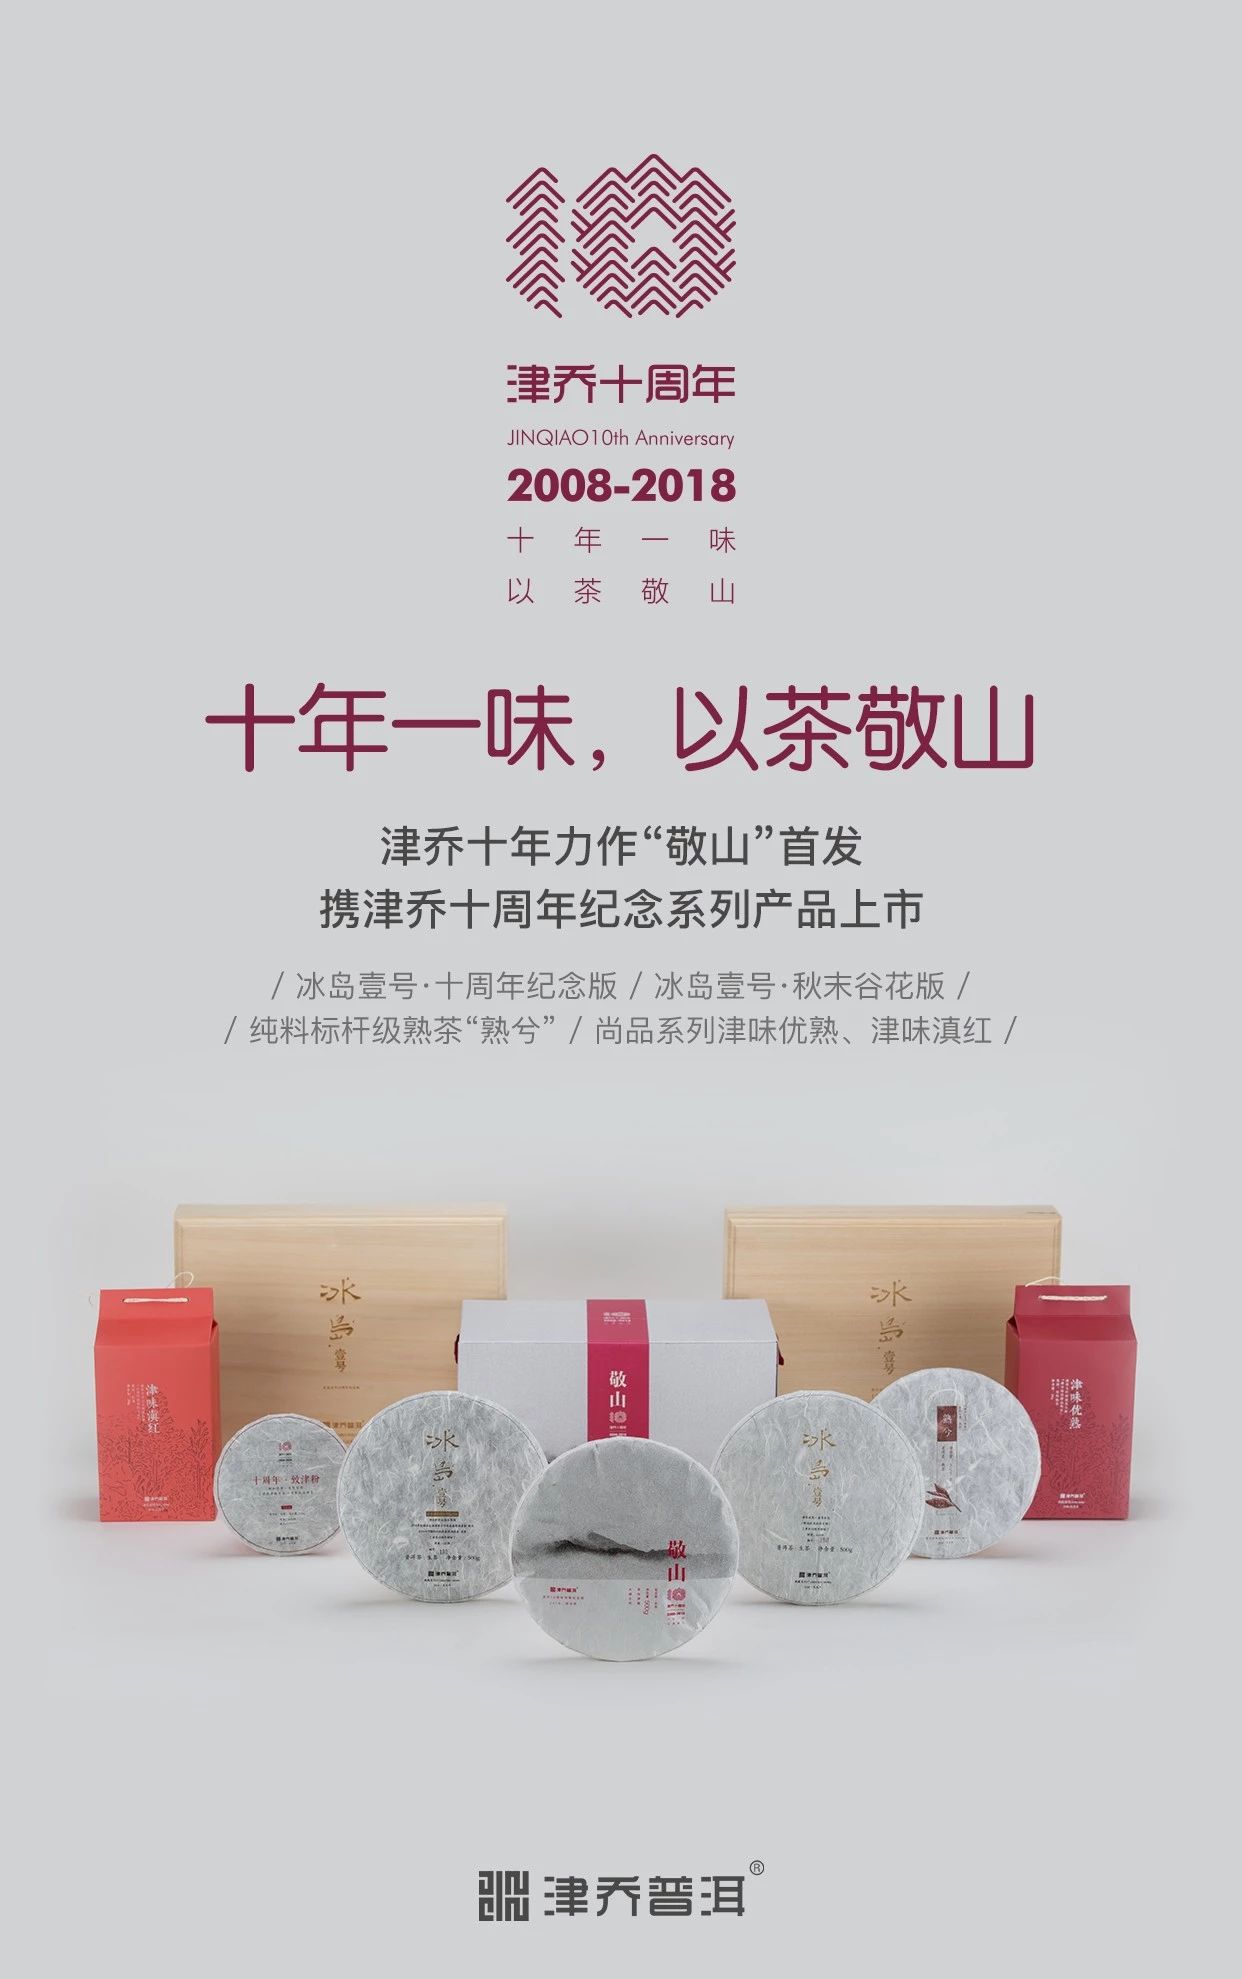 【动态】津乔2018十周年纪念茶品发布，十年力作“敬山”携新品上市（文末留言祝福）